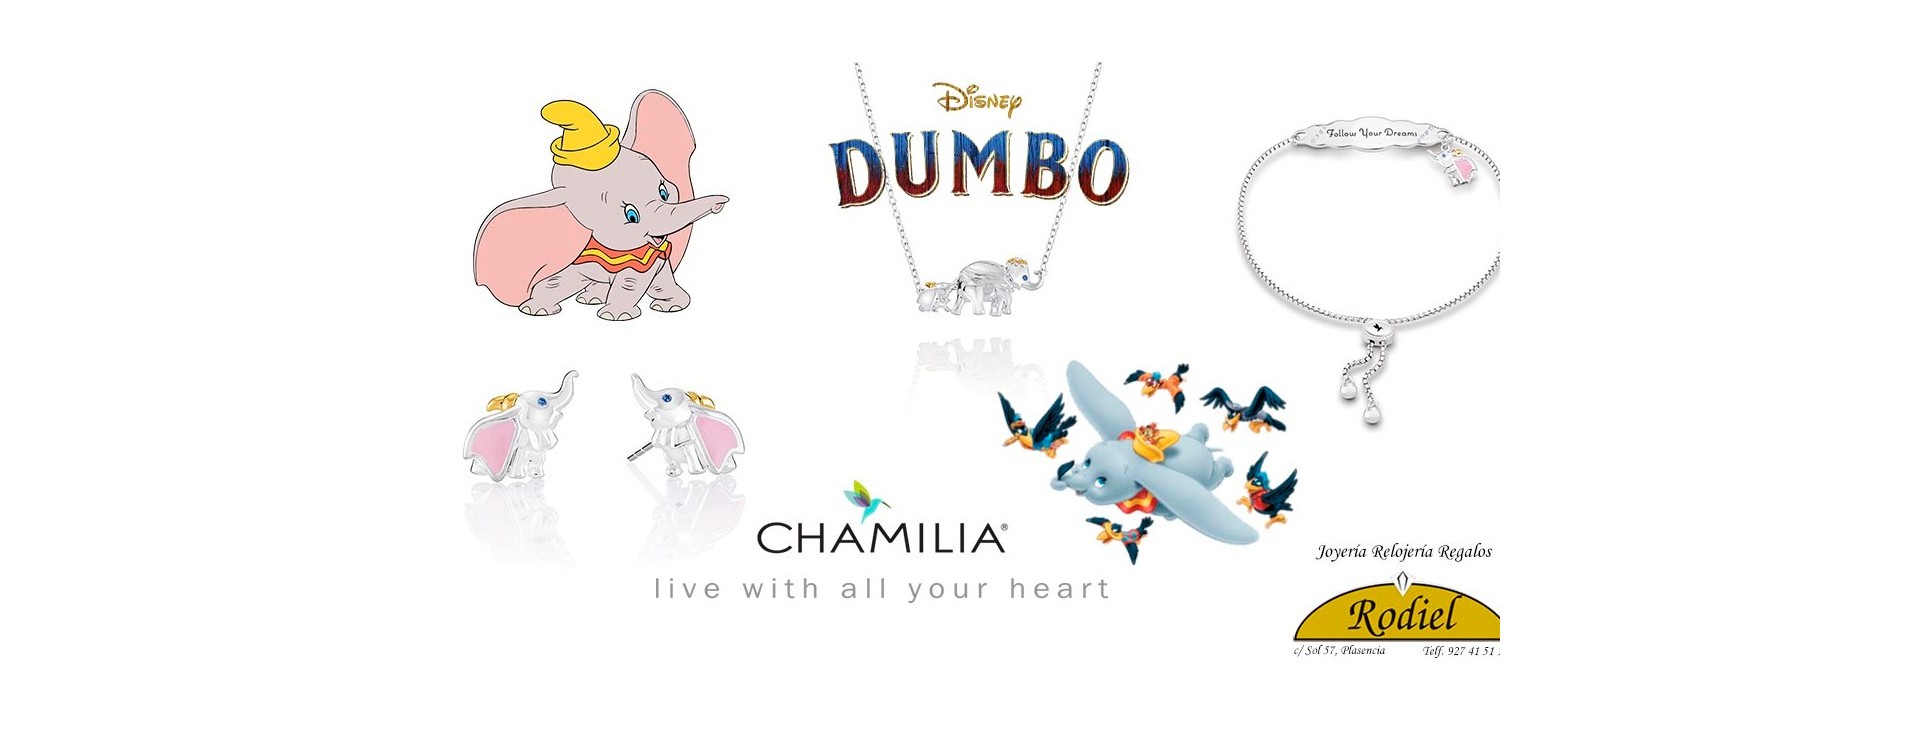 Colección Chamilia Disney «DUMBO»